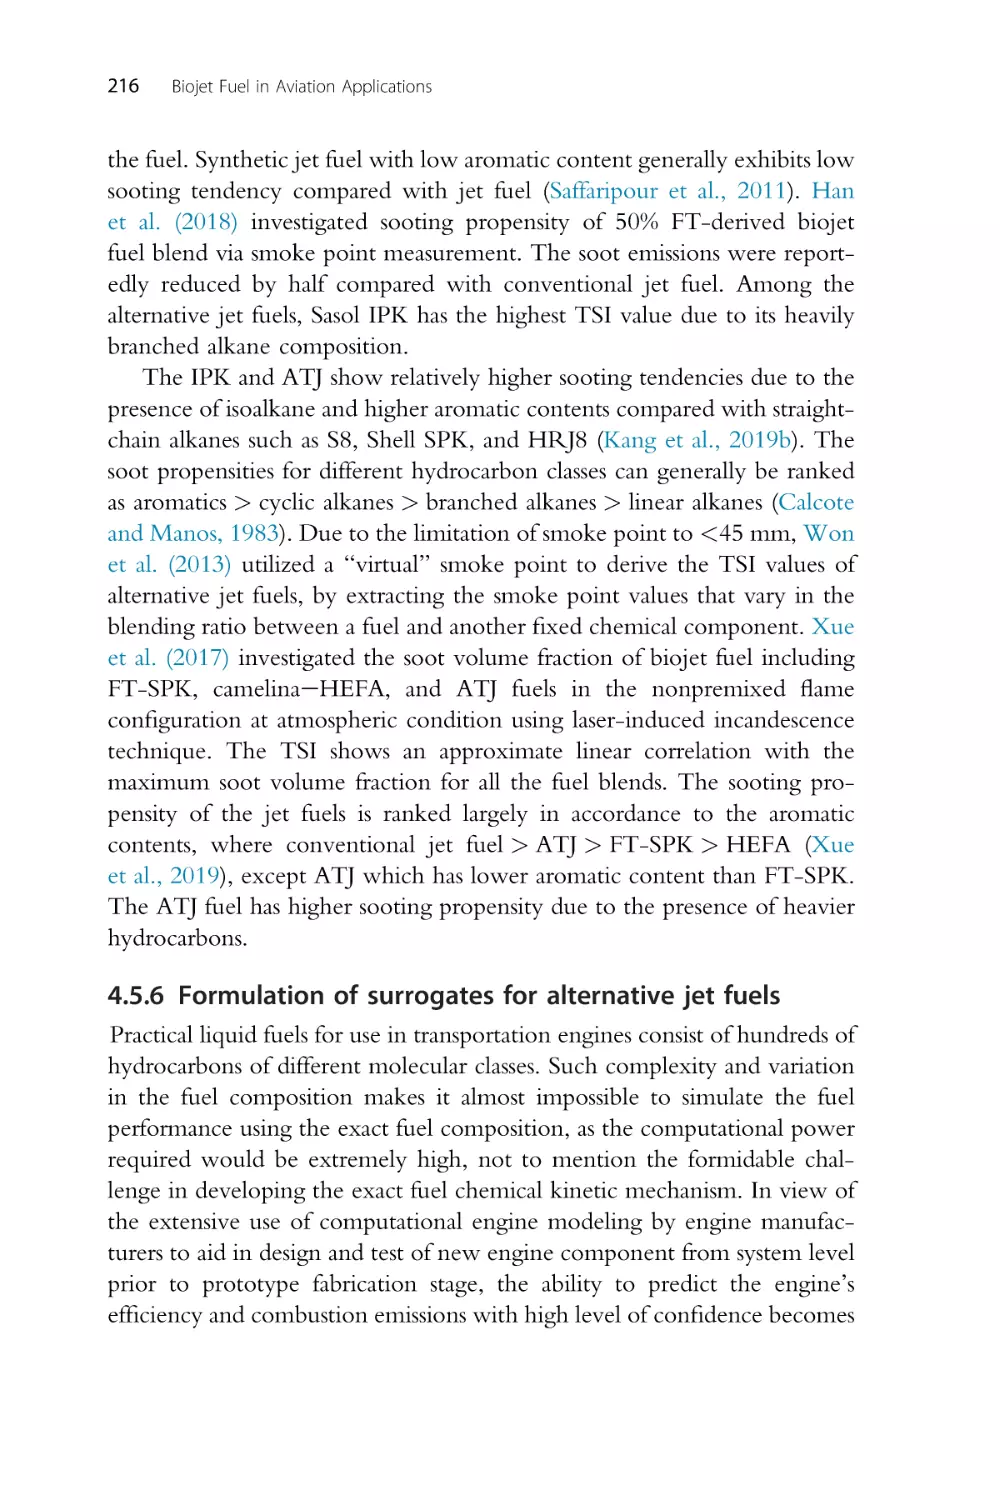 4.5.6 Formulation of surrogates for alternative jet fuels